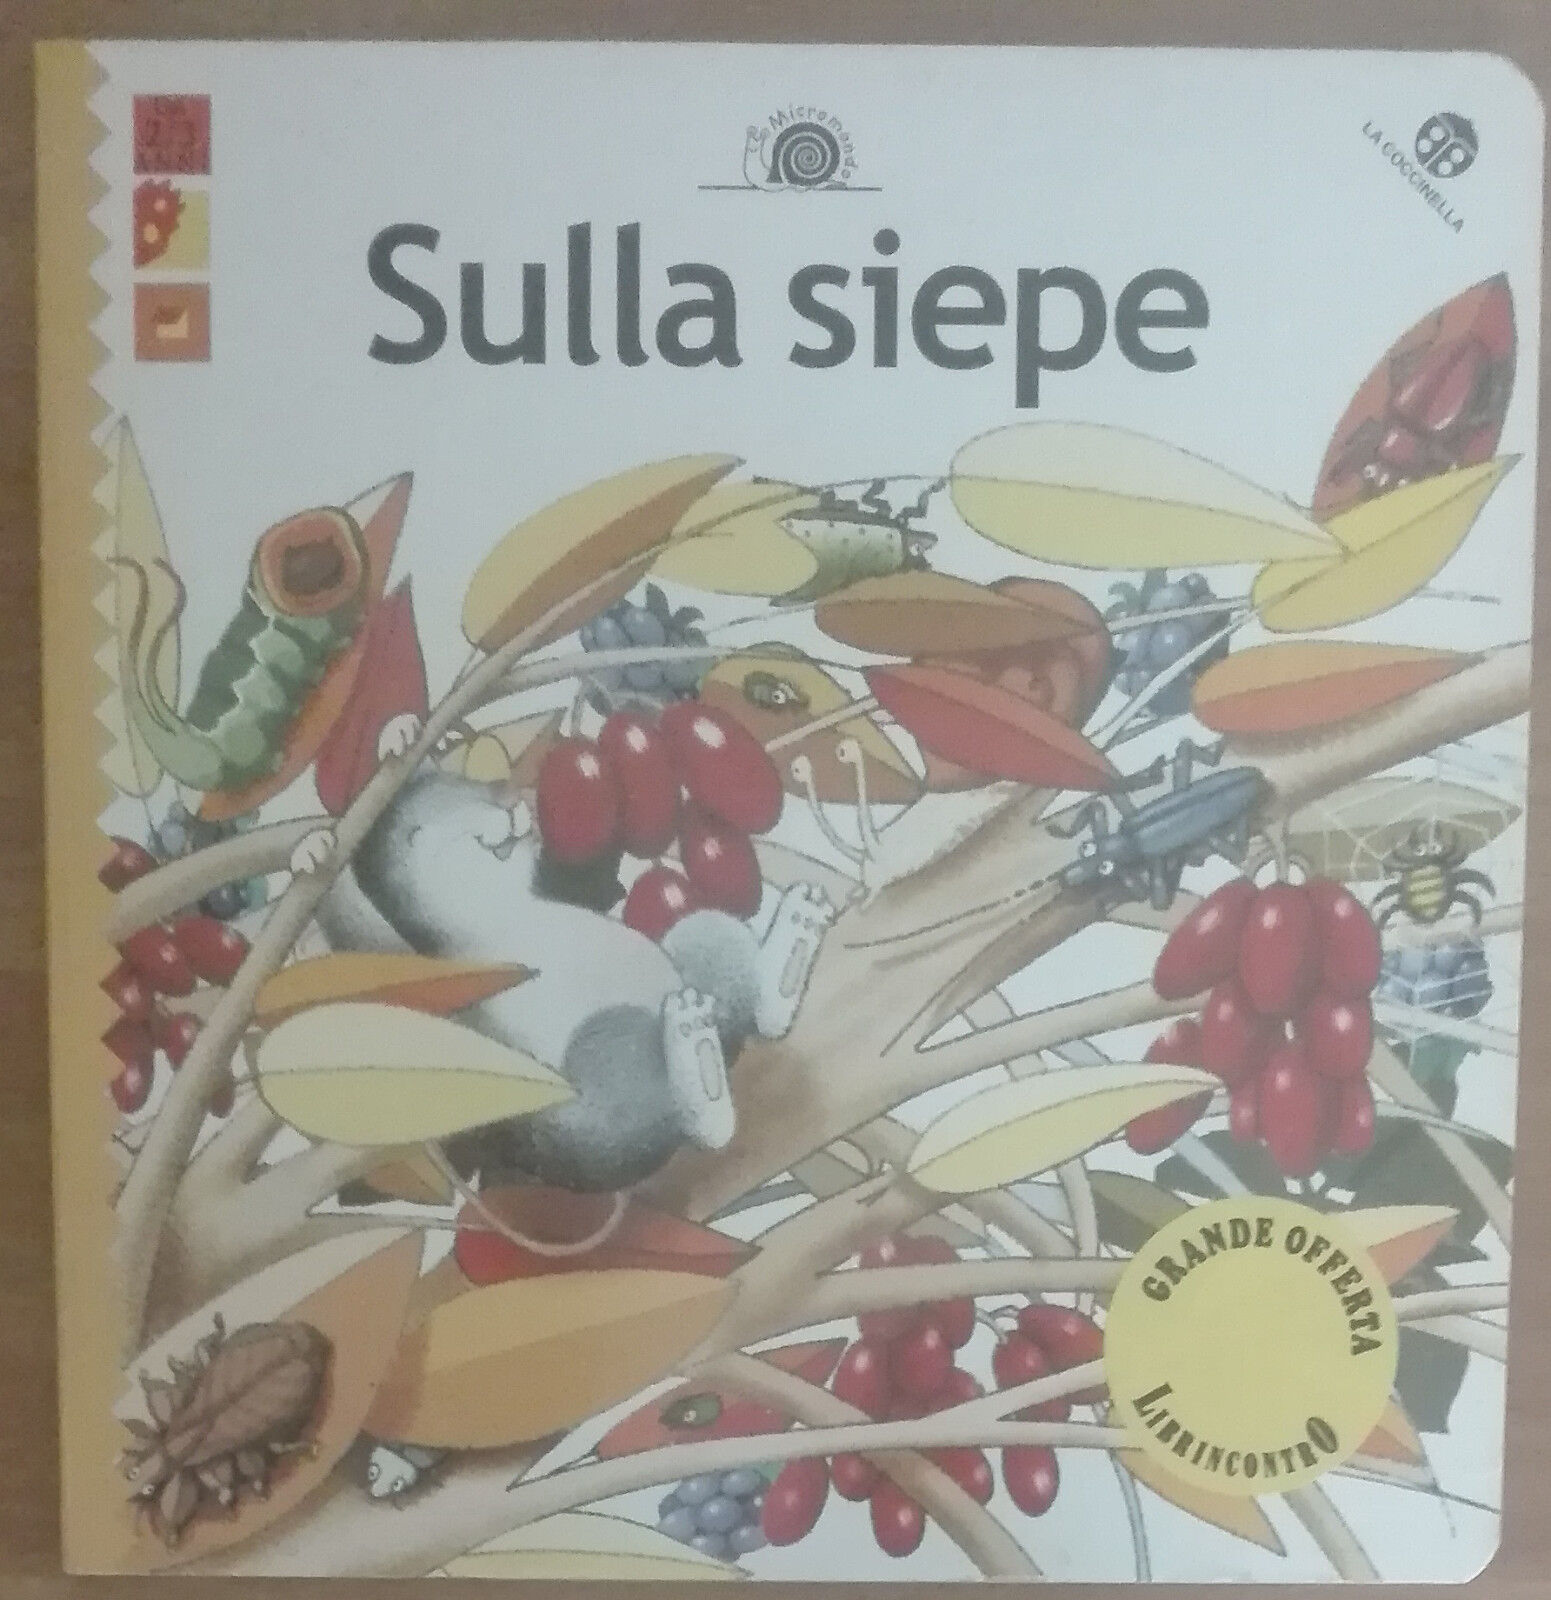 Sulla siepe - AA.VV. - La coccinella,2001 - A